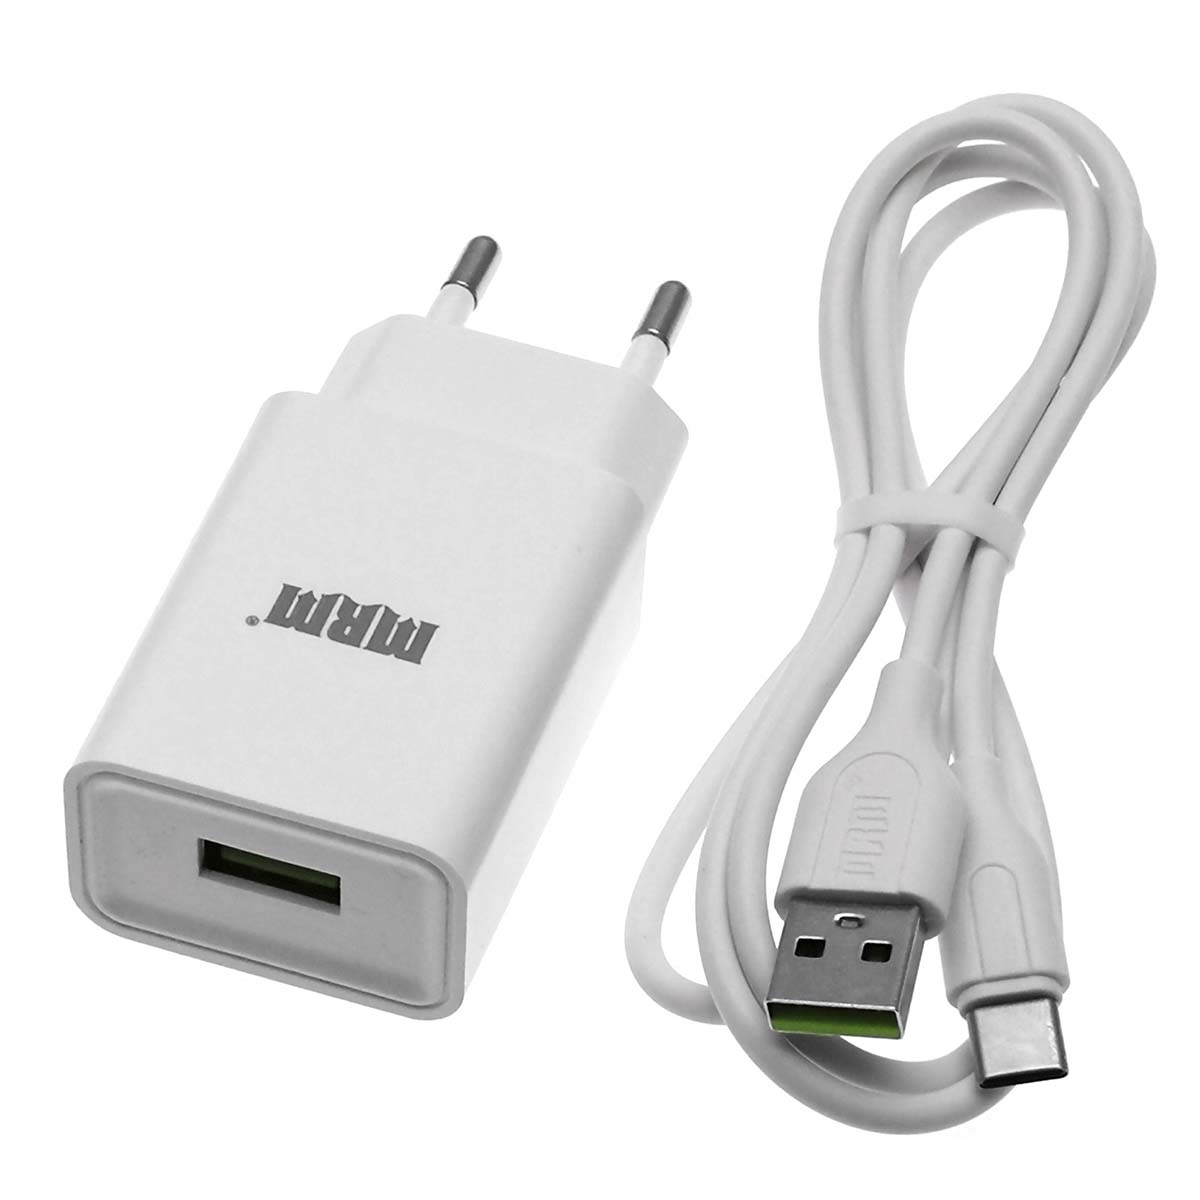 СЗУ (Сетевое зарядное устройство) MRM MR21t, 1 USB порт, 2.4A MAX, USB кабель Type-C, длина 1м, цвет белый